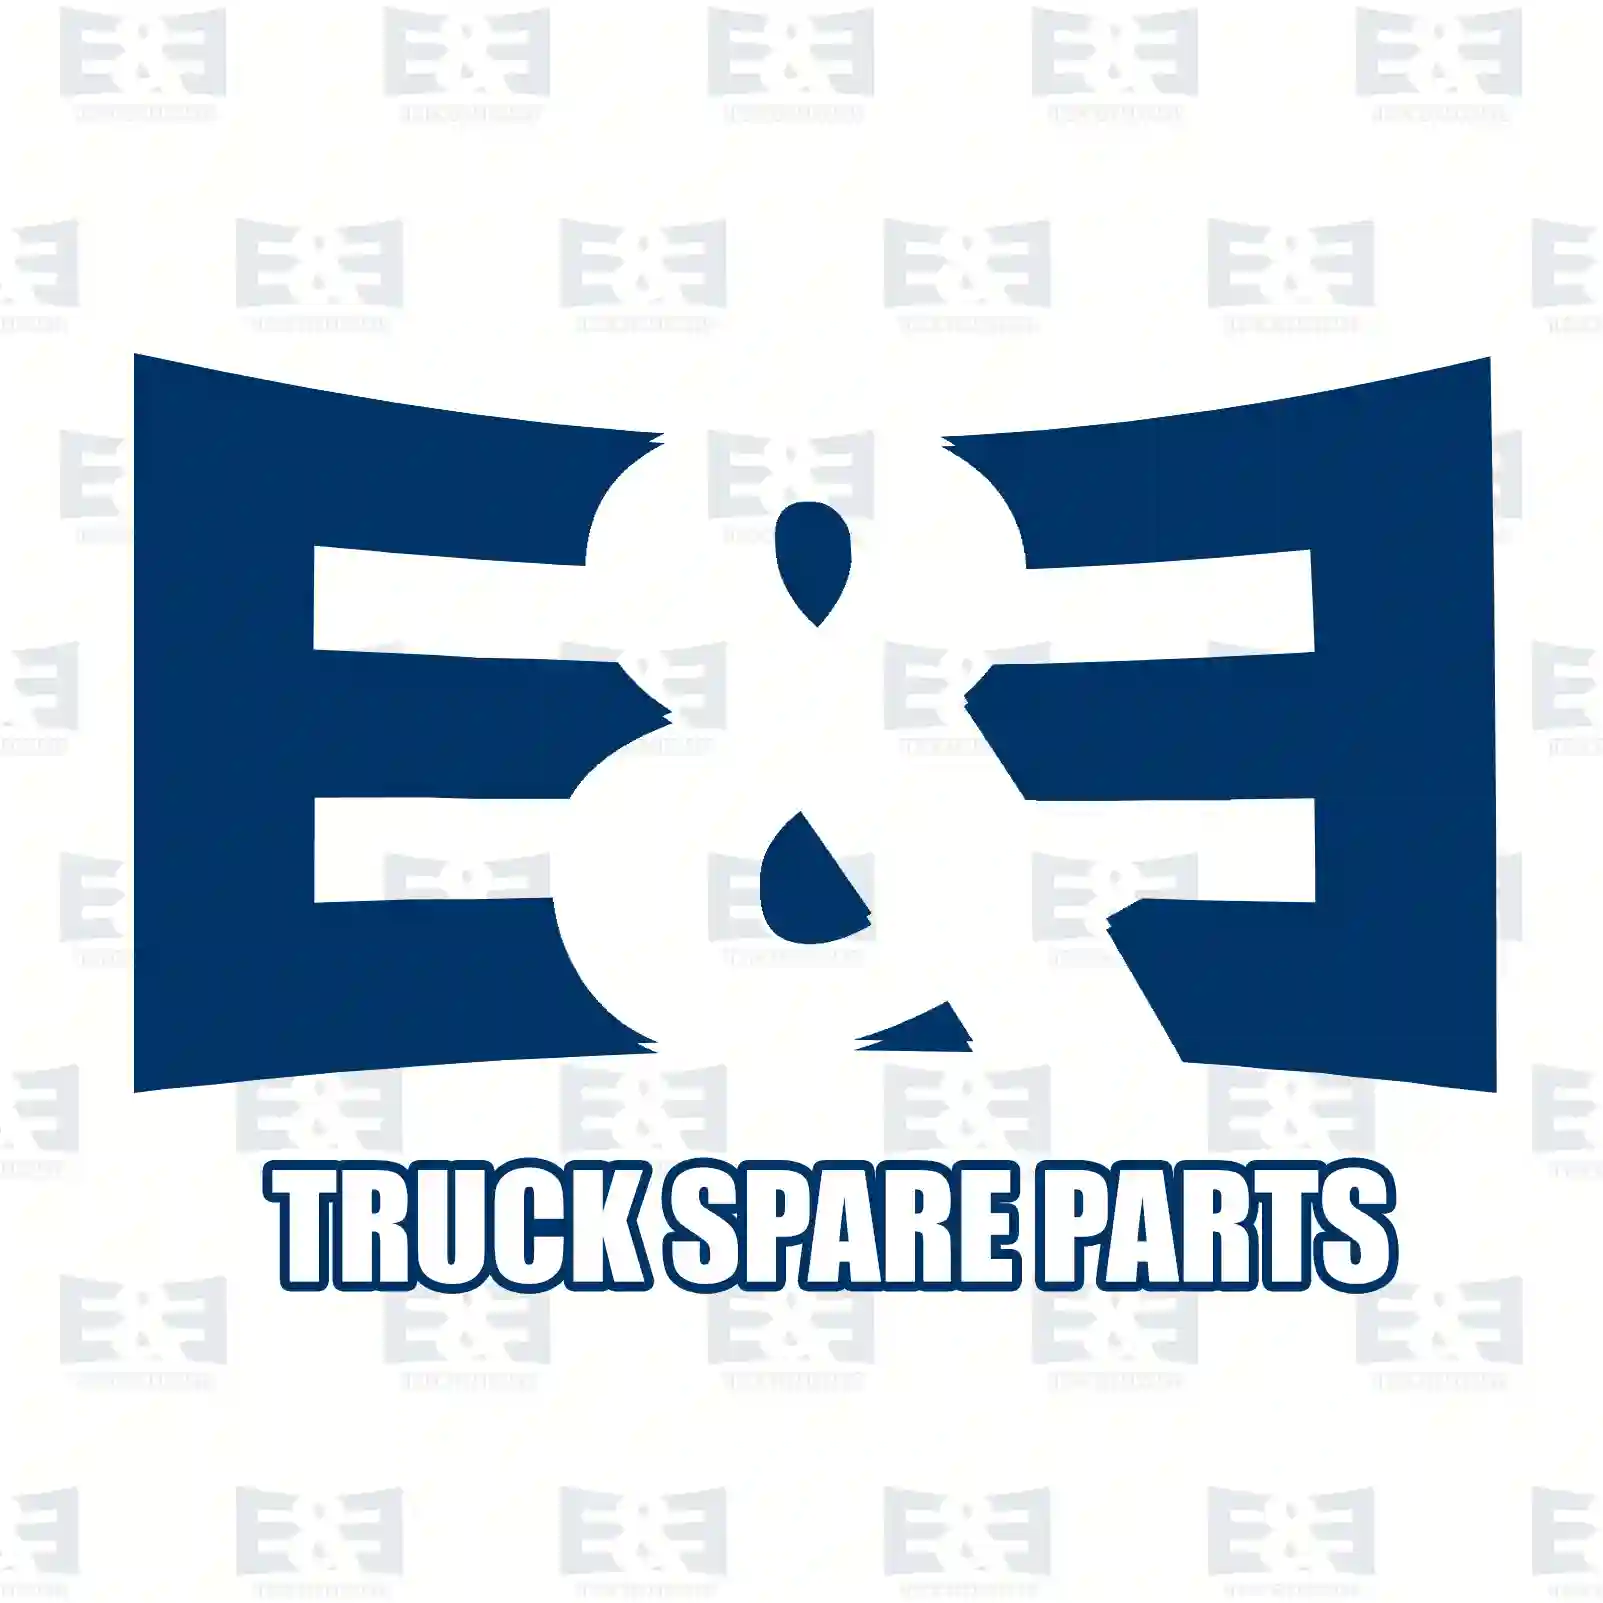 Lock ring, 2E2285211, 000472052000, 804831, ZG01398-0008, ||  2E2285211 E&E Truck Spare Parts | Truck Spare Parts, Auotomotive Spare Parts Lock ring, 2E2285211, 000472052000, 804831, ZG01398-0008, ||  2E2285211 E&E Truck Spare Parts | Truck Spare Parts, Auotomotive Spare Parts